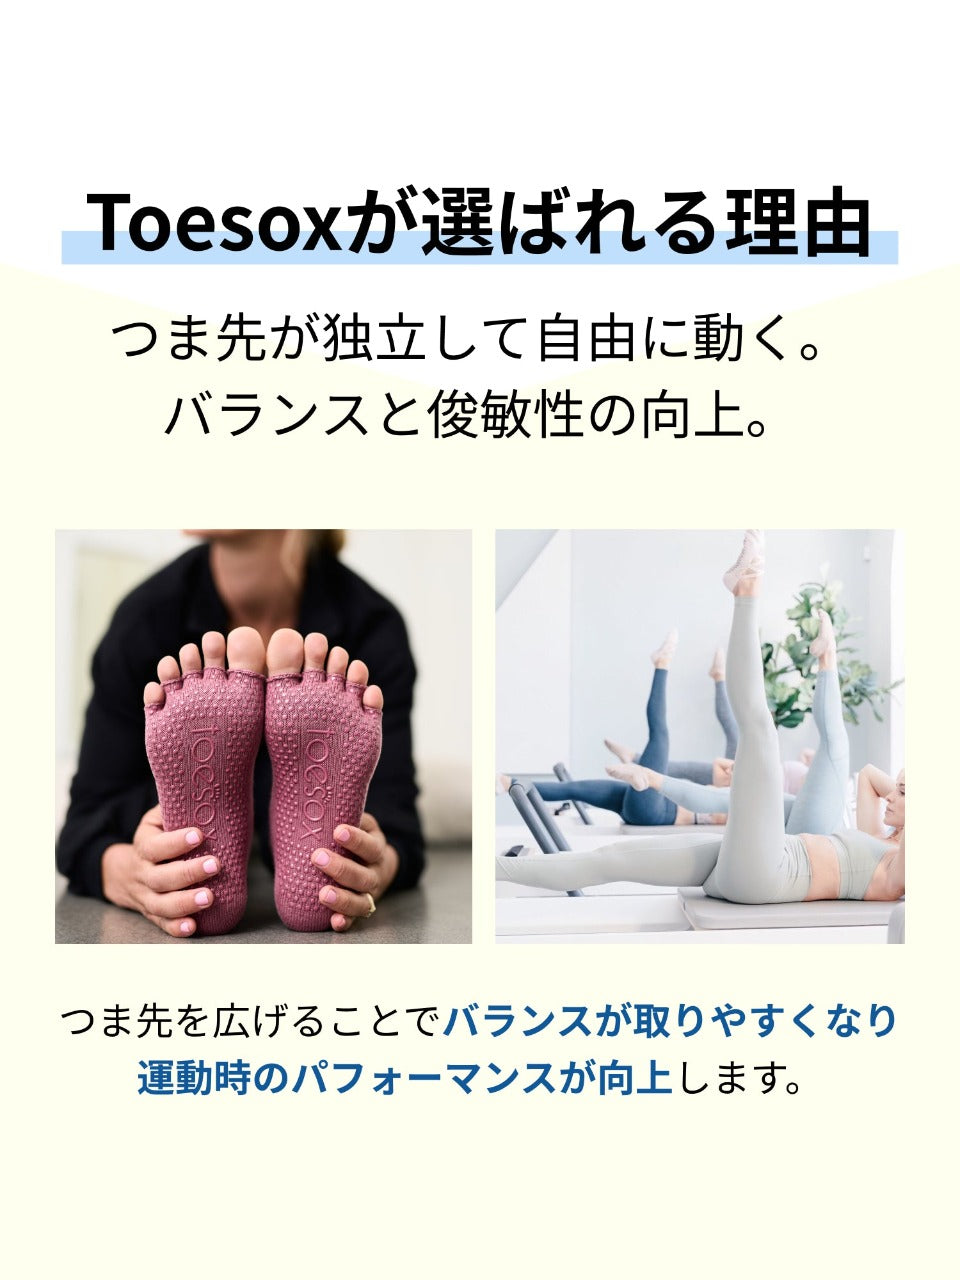 [SALE13%OFF][TOESOX] L (Full-Toe) Grip Socks / Yoga Non-Slip Socks 22SS [A] 10_3